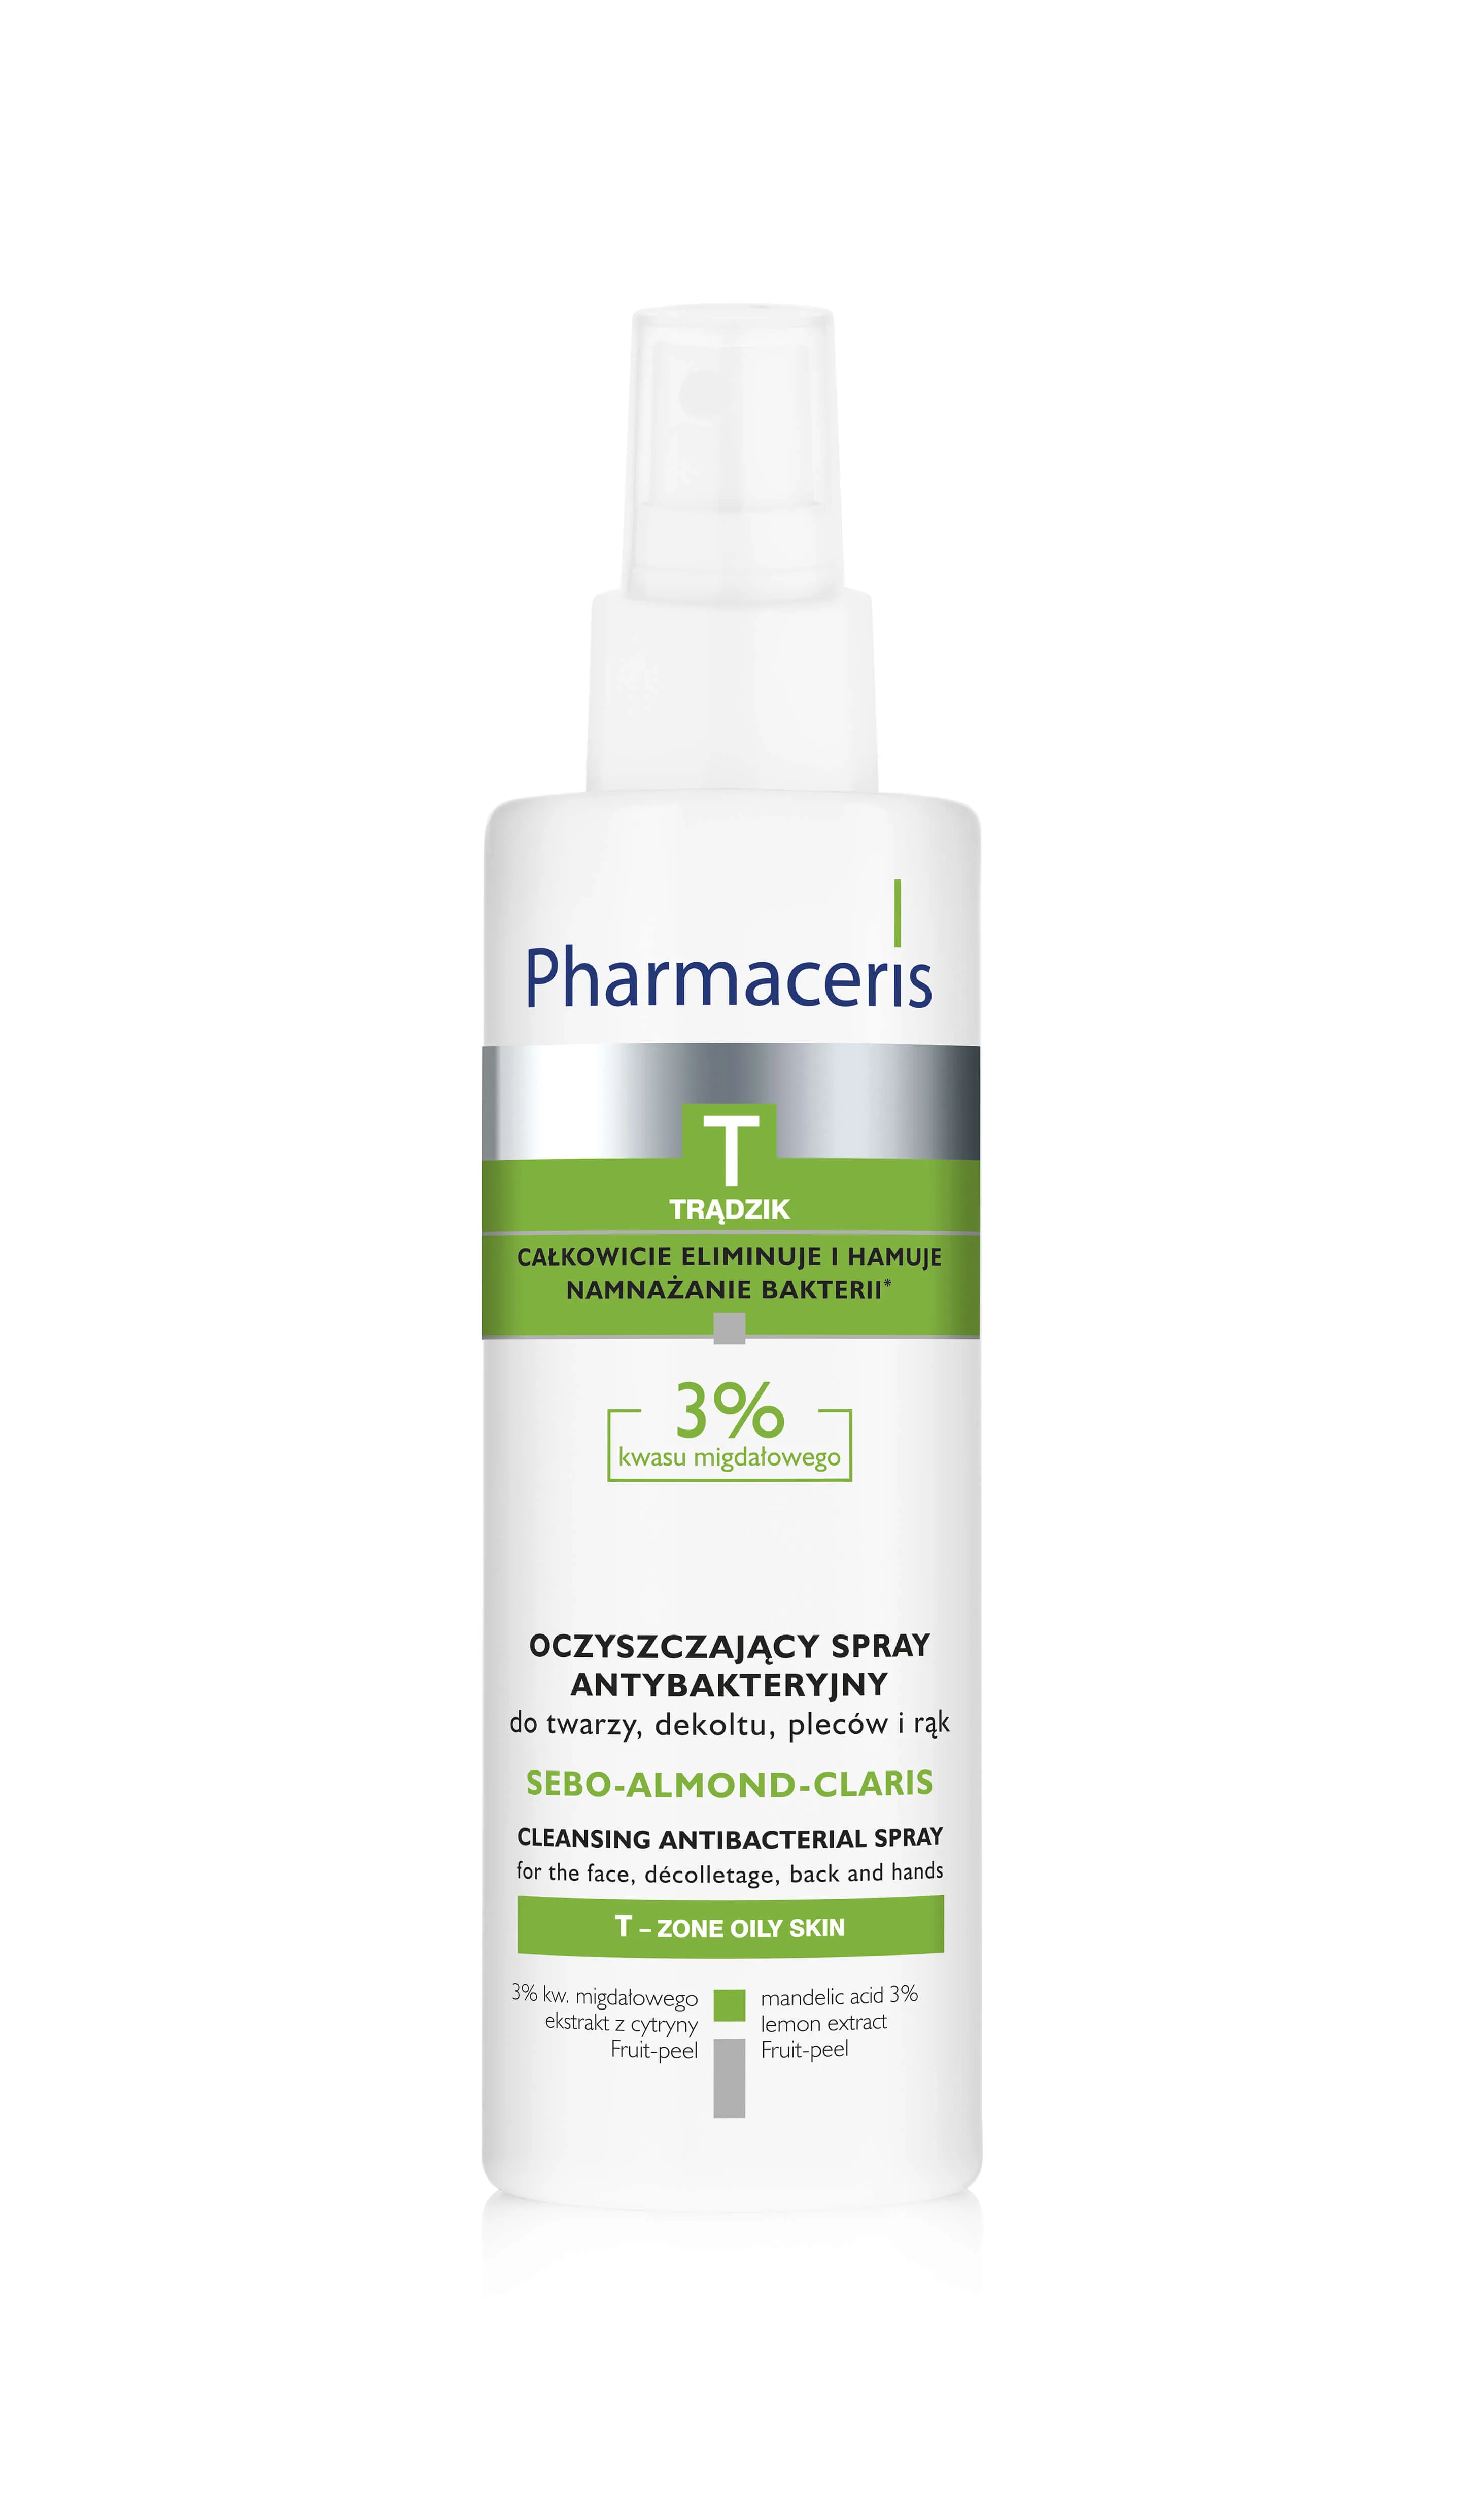 Pharmaceris T Sebo-Almond-Claris, oczyszczający spray antybakteryjny, 200 ml